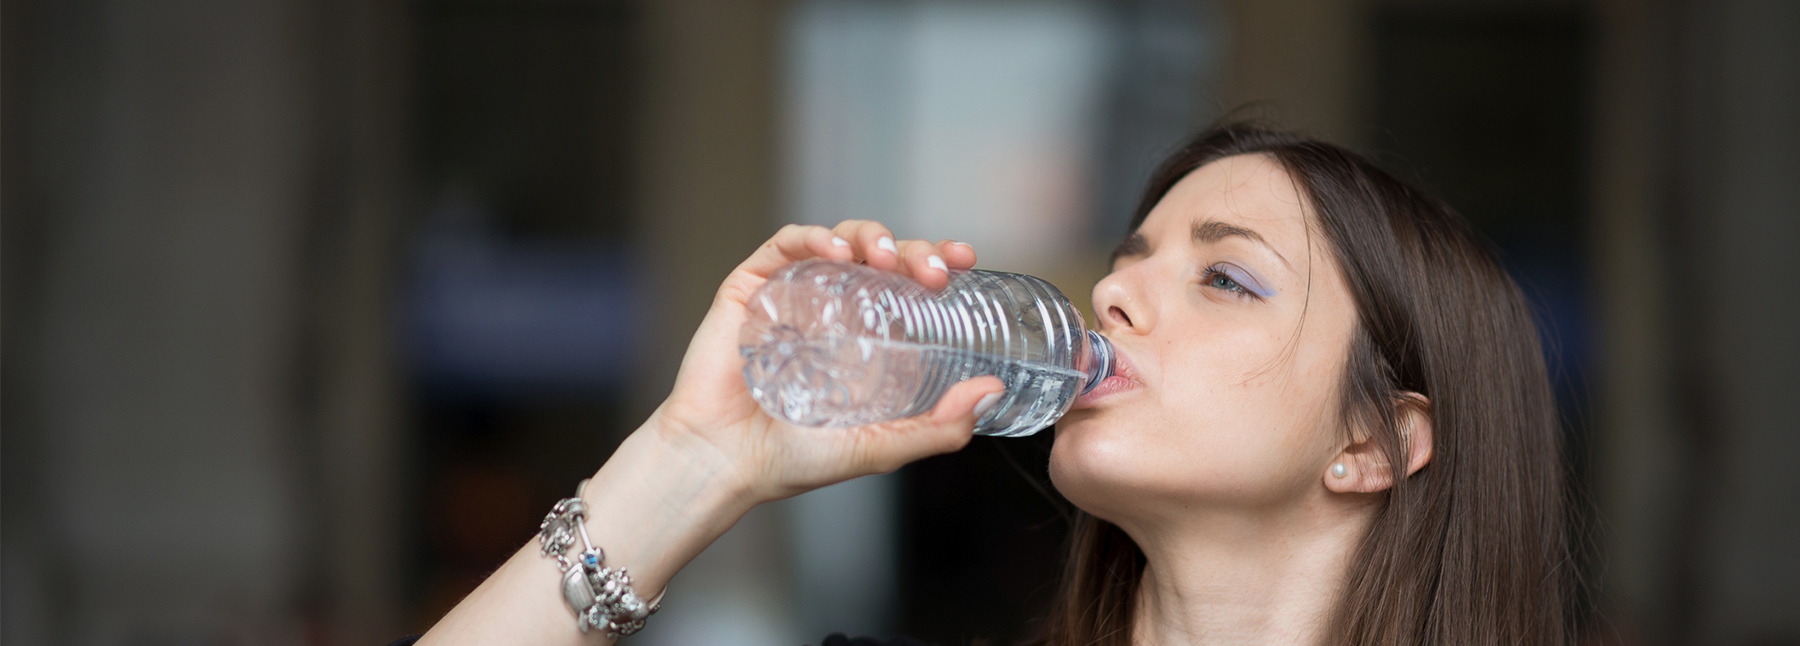 Por qué es tan importante beber agua?